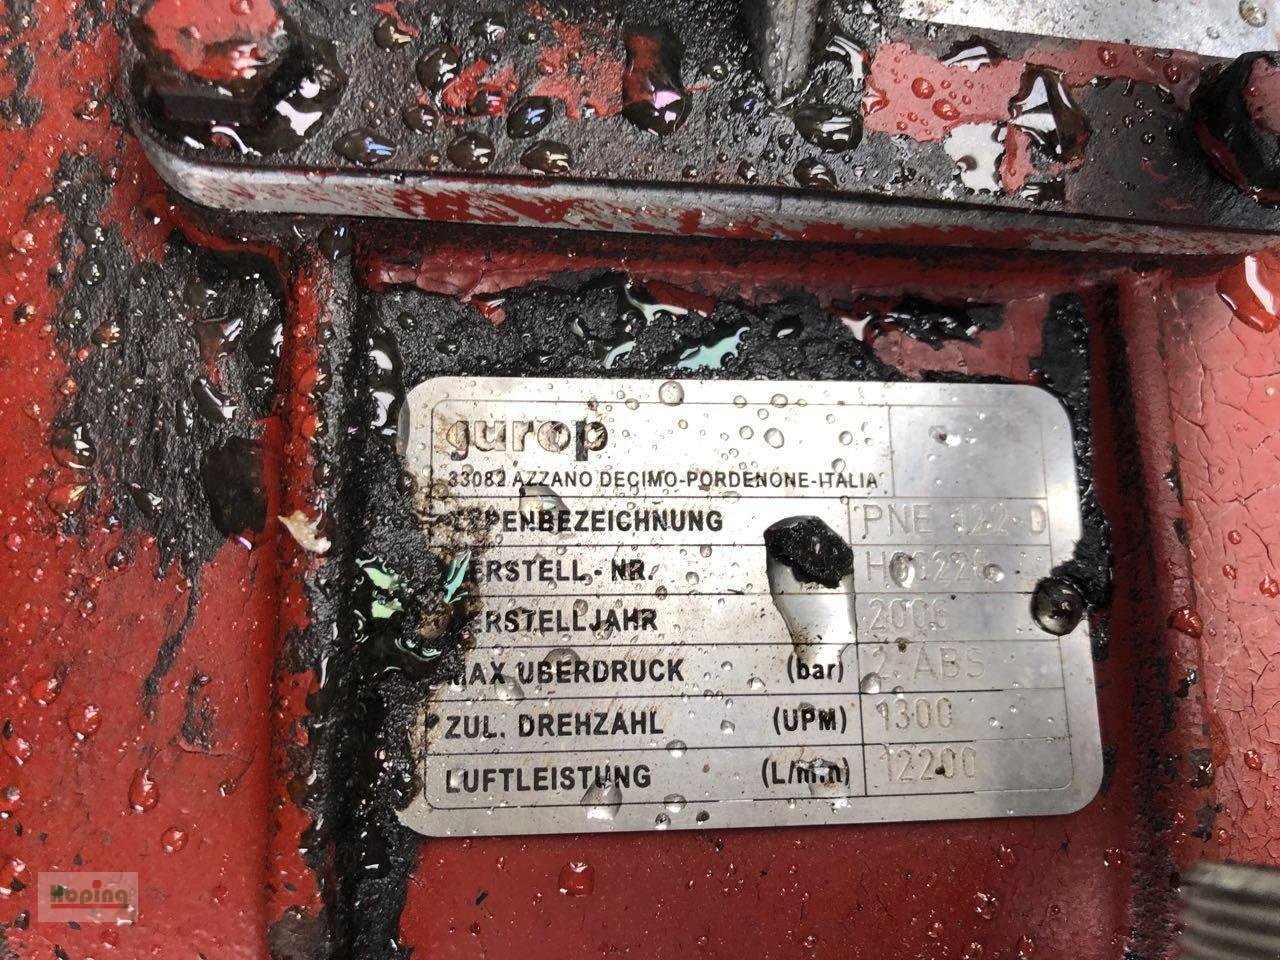 Vakuumfass des Typs Kotte VT 18500/5, Gebrauchtmaschine in Bakum (Bild 8)